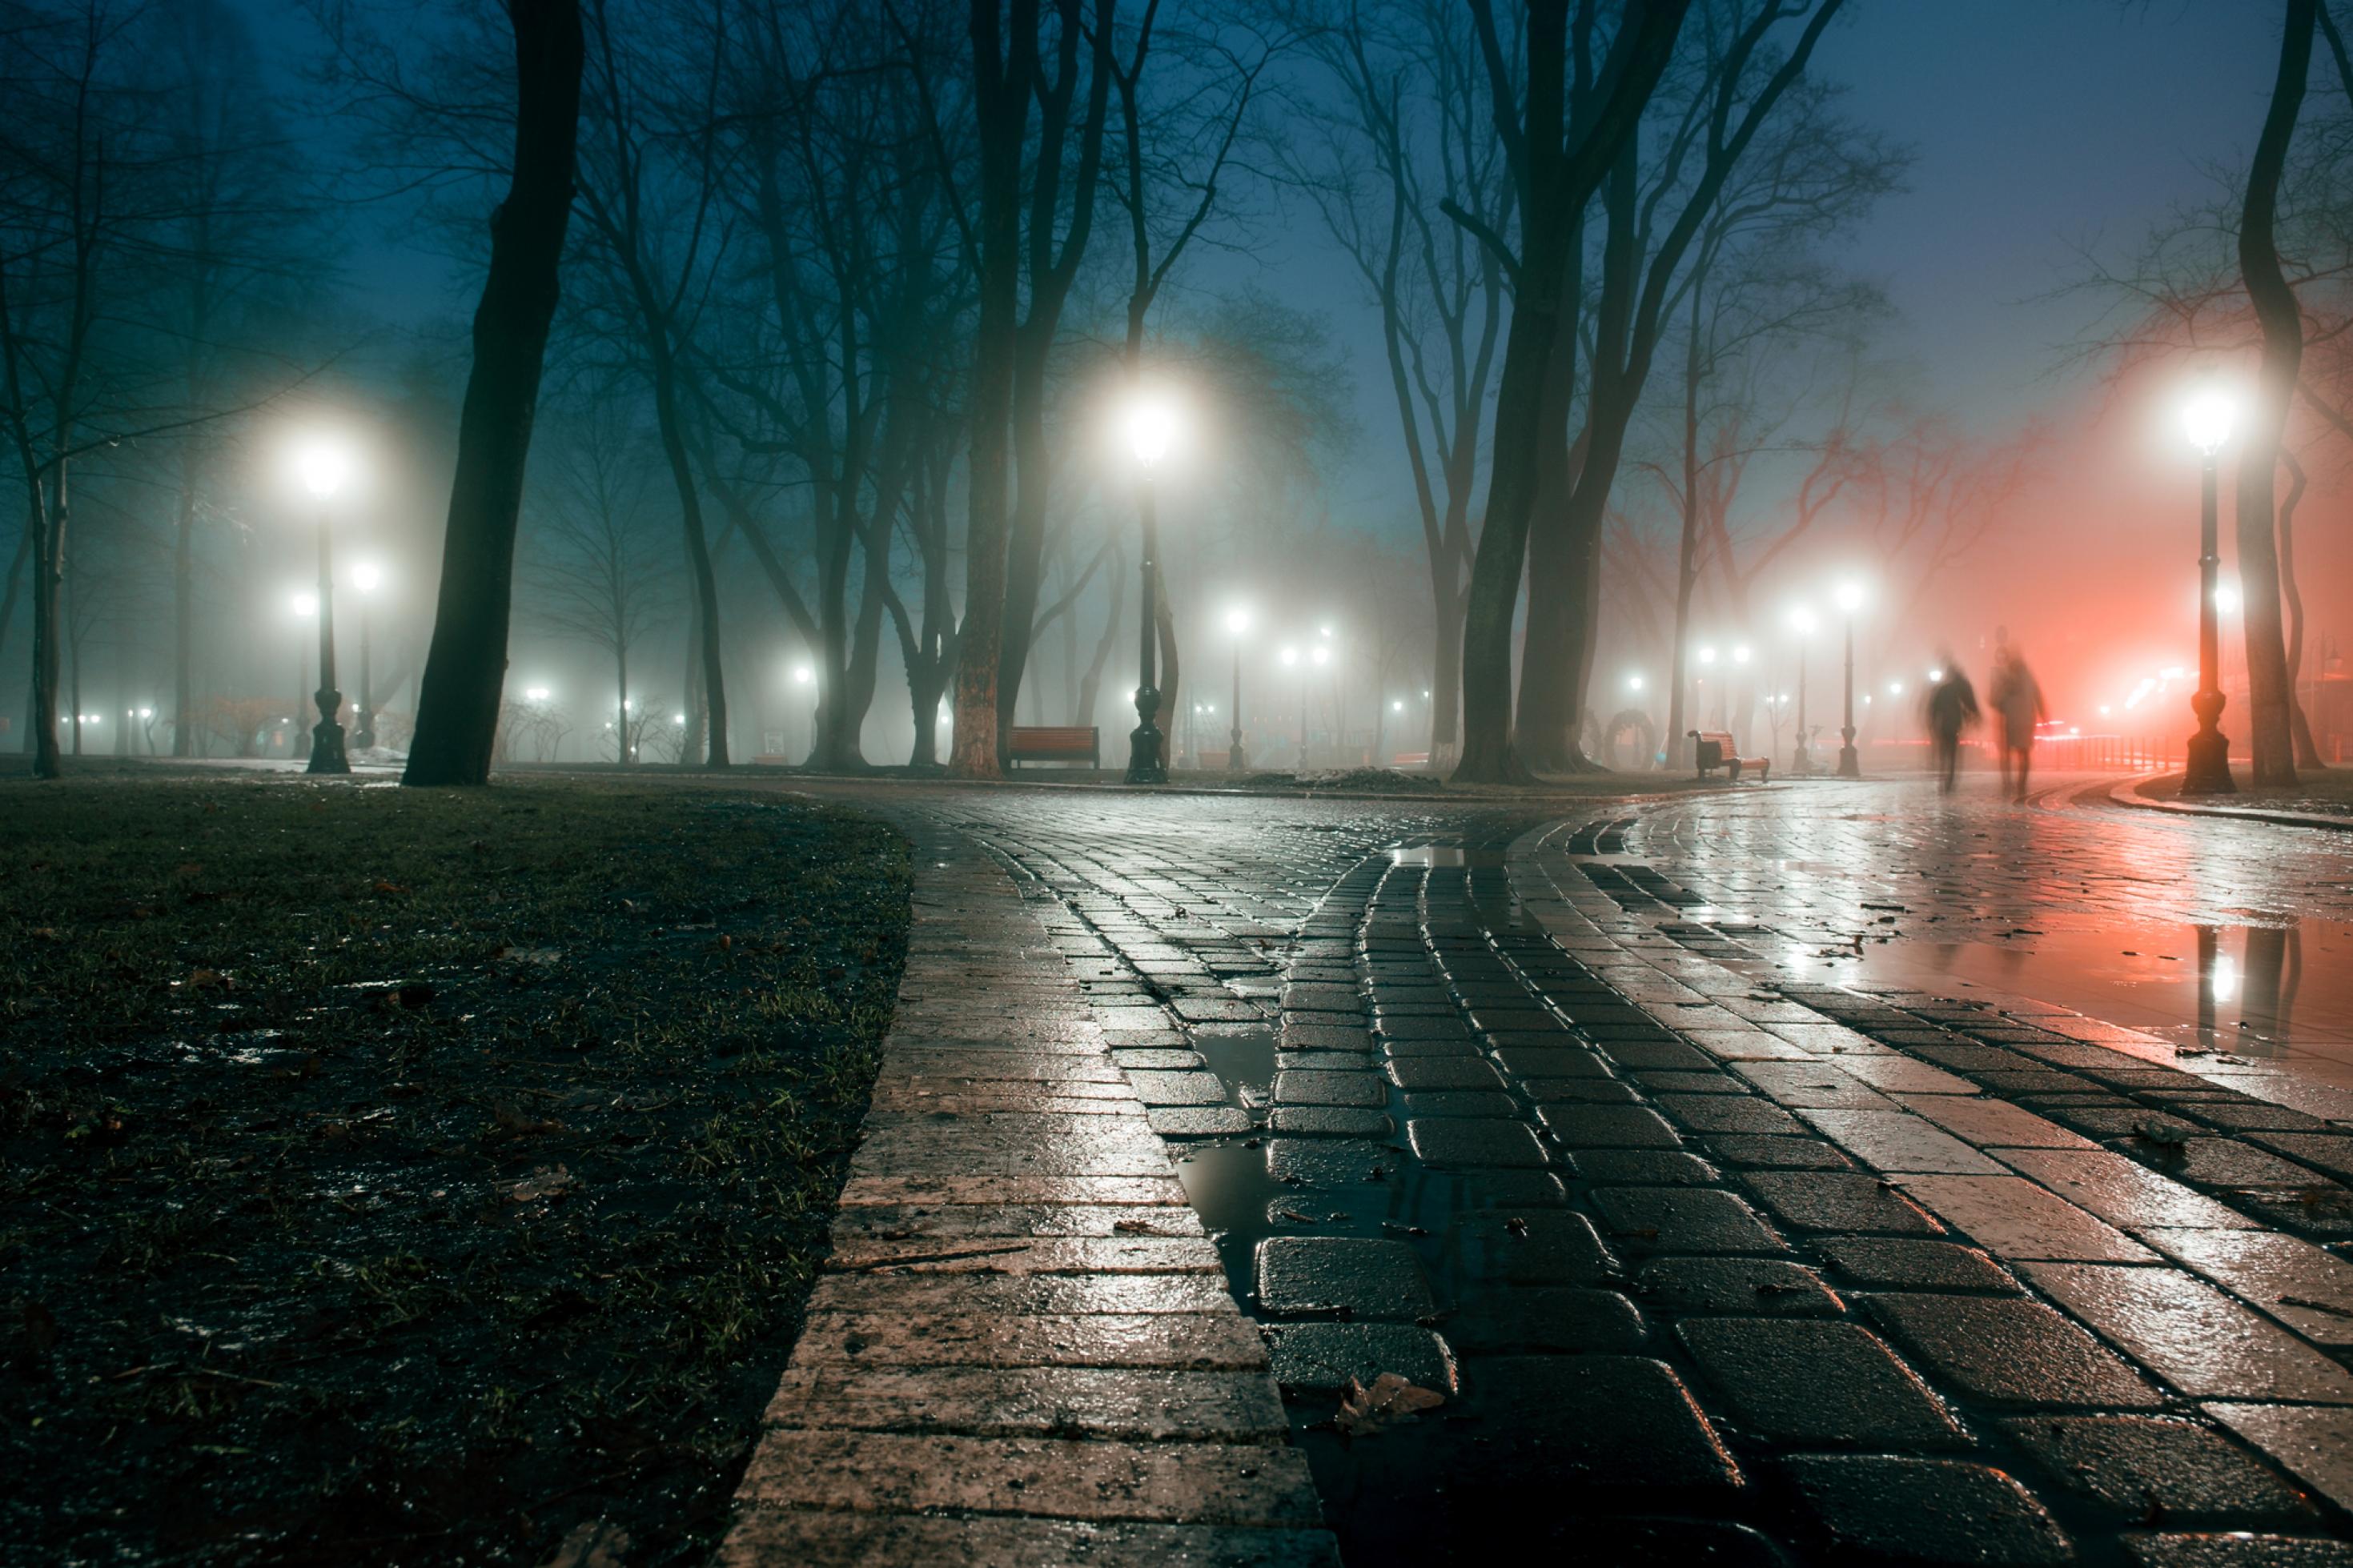 Nebel über eine Straße mit Bäumen bei Nacht.